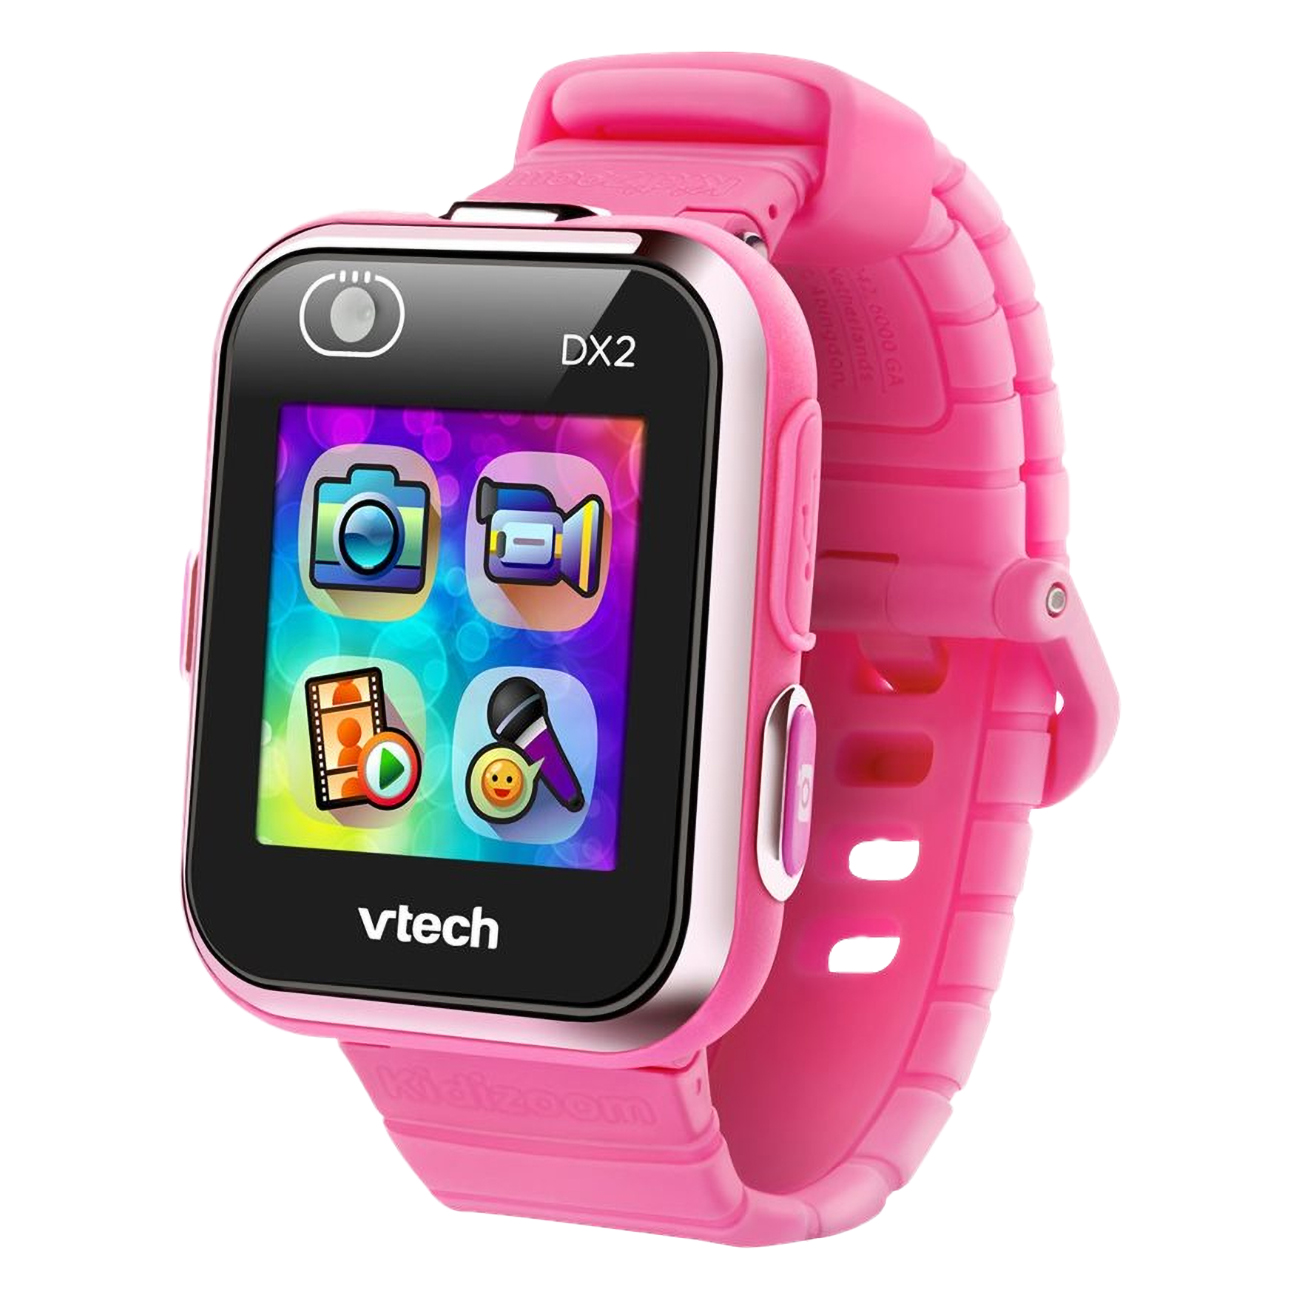 Vtech Kidizoom DX2-pink Smartwatch